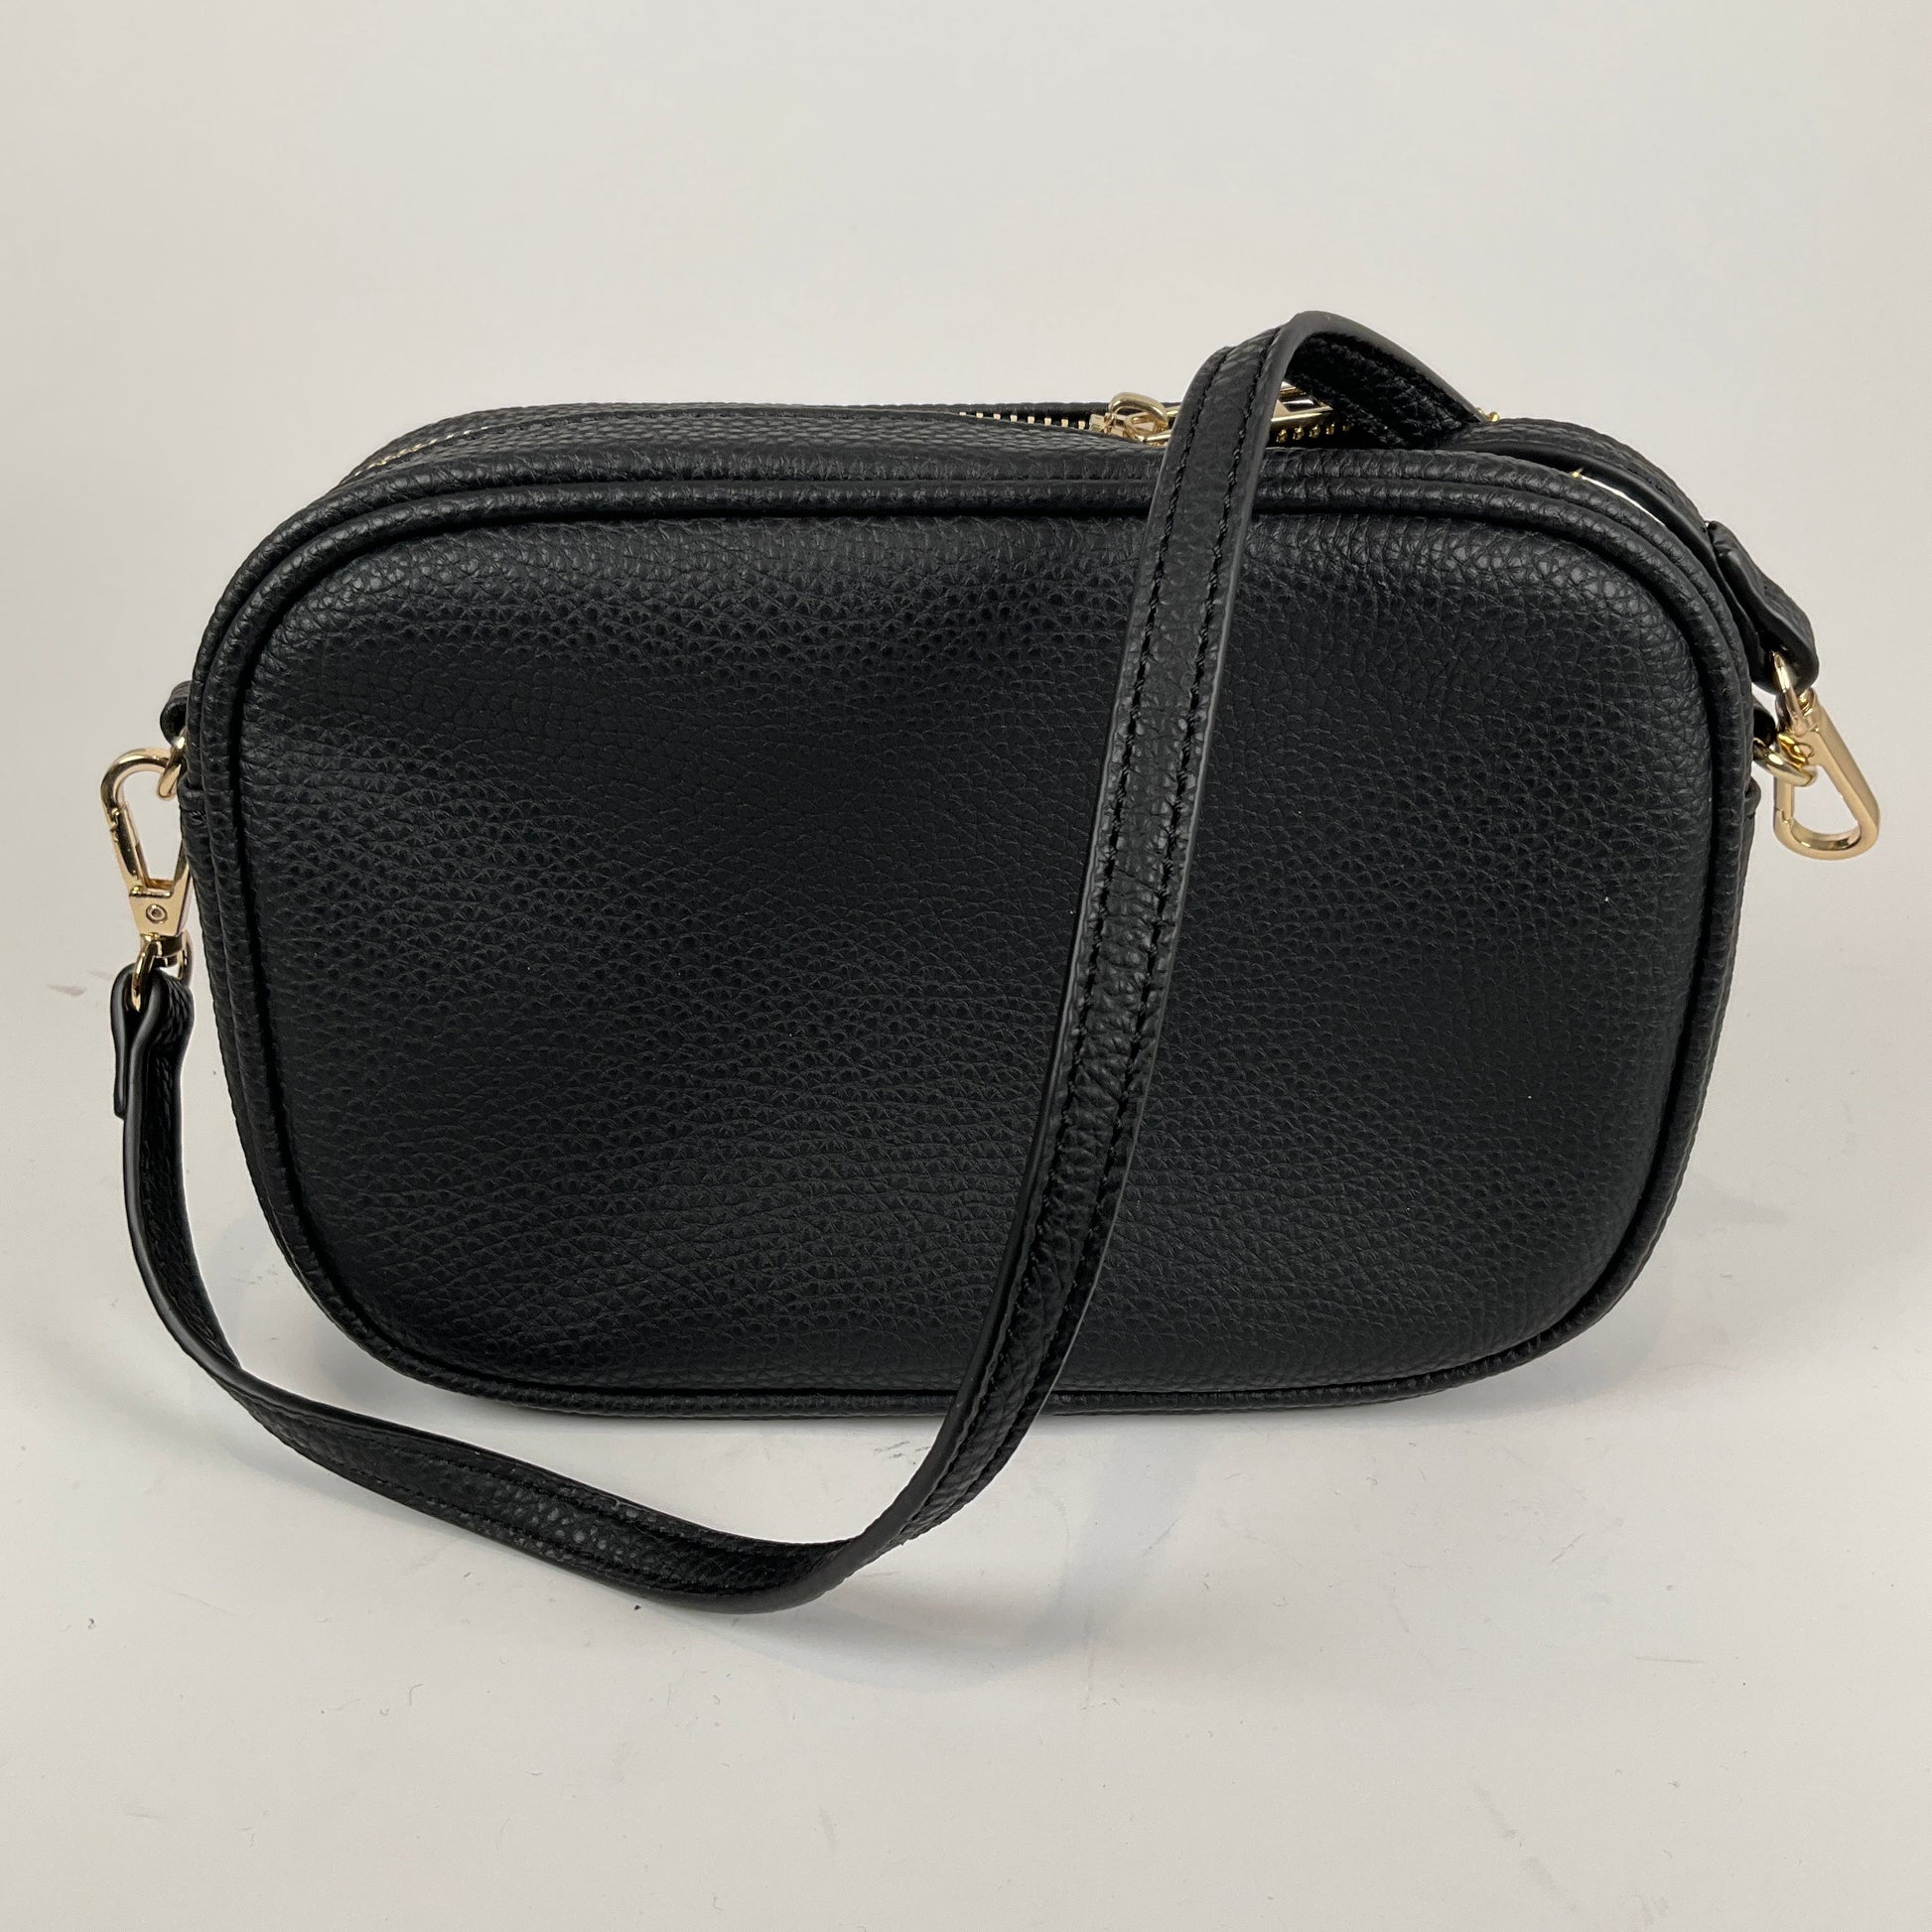 Ladies Shoulder Purse Black Handbags Wallets & Cases